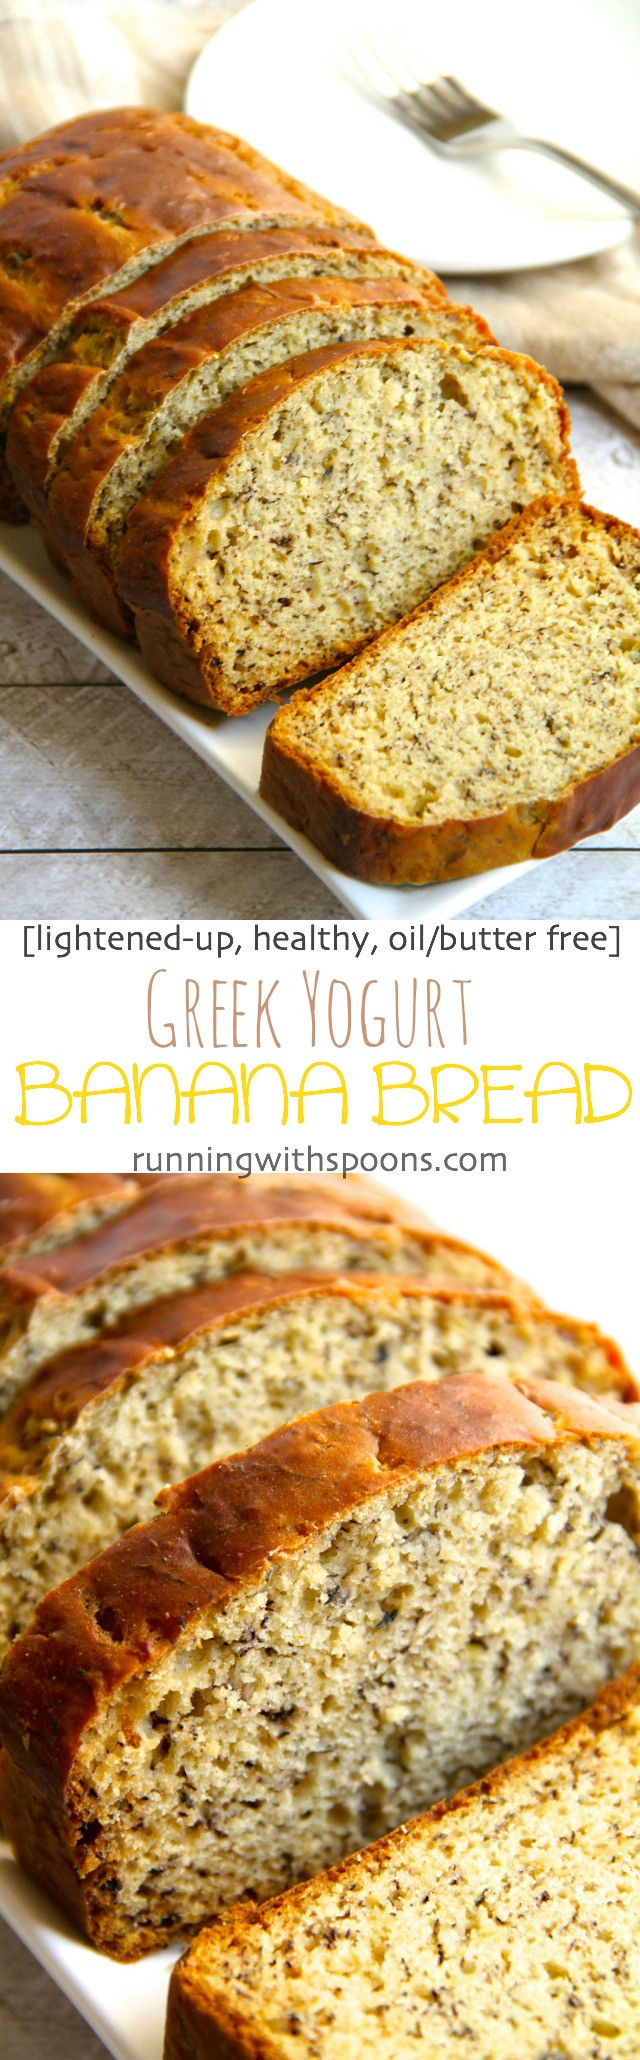 Healthy Banana Bread With Yogurt
 Greek Yogurt Banana Bread